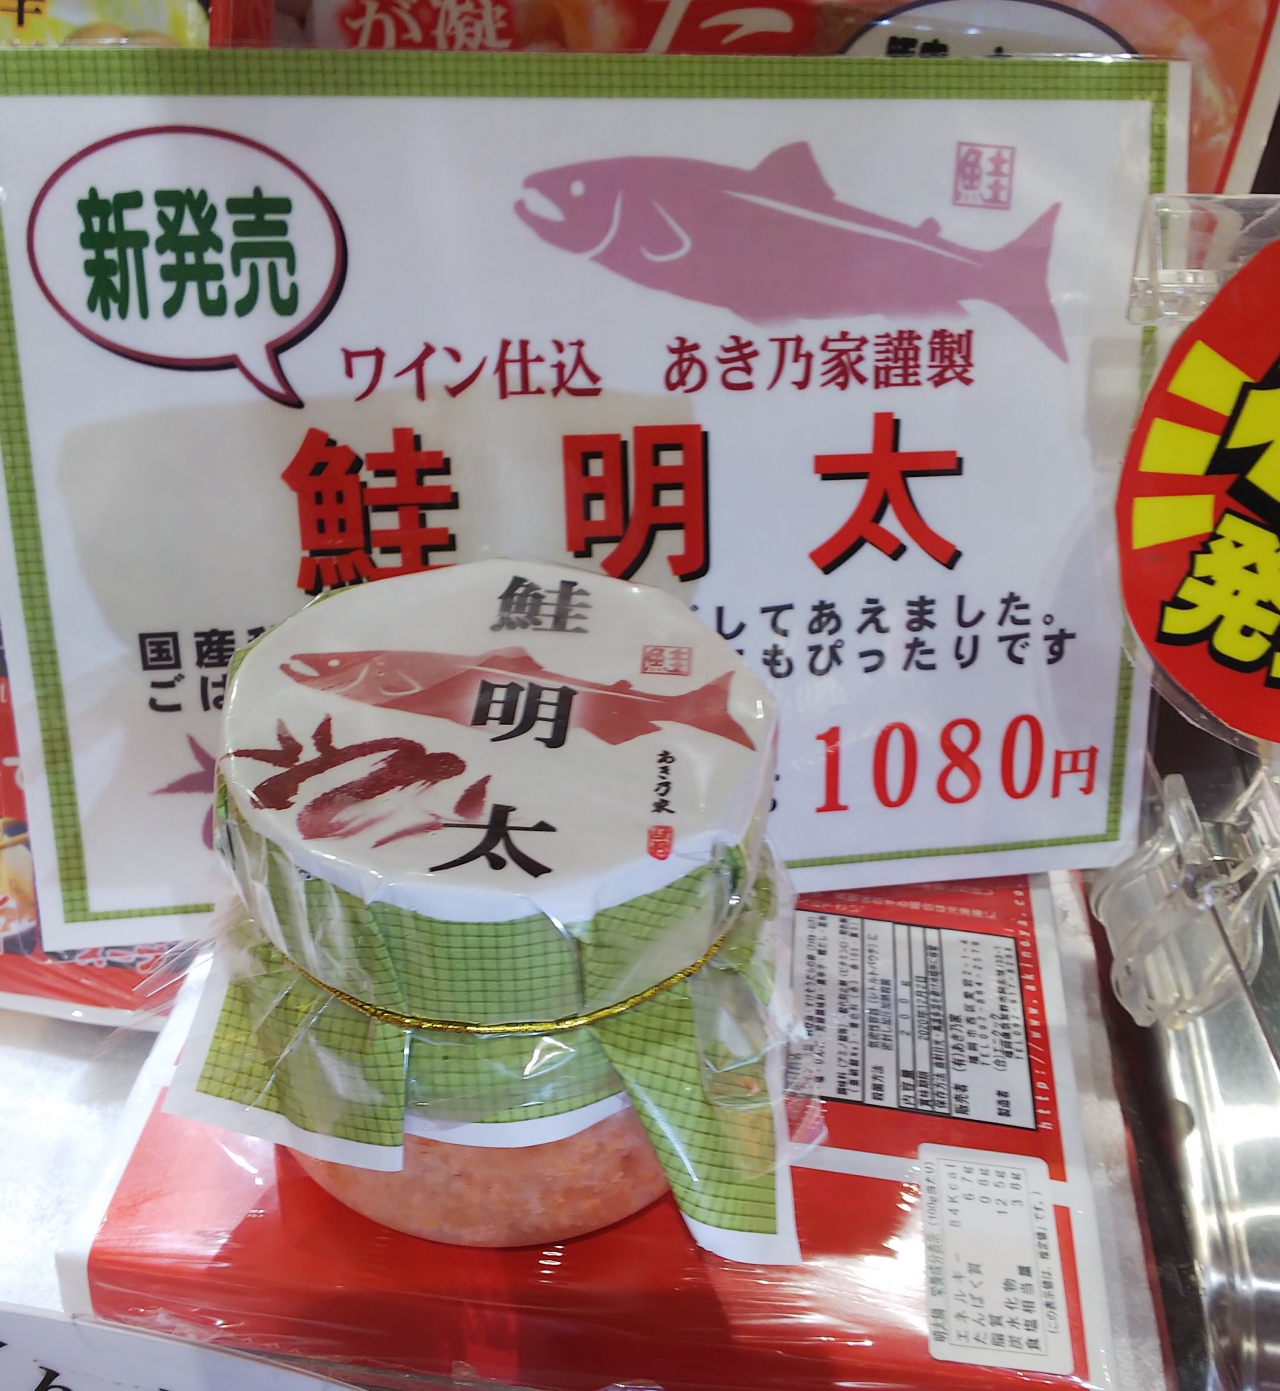 鮭明太 が新登場 博多のお土産 マイング 博多 九州のおみやげ処 全92店舗